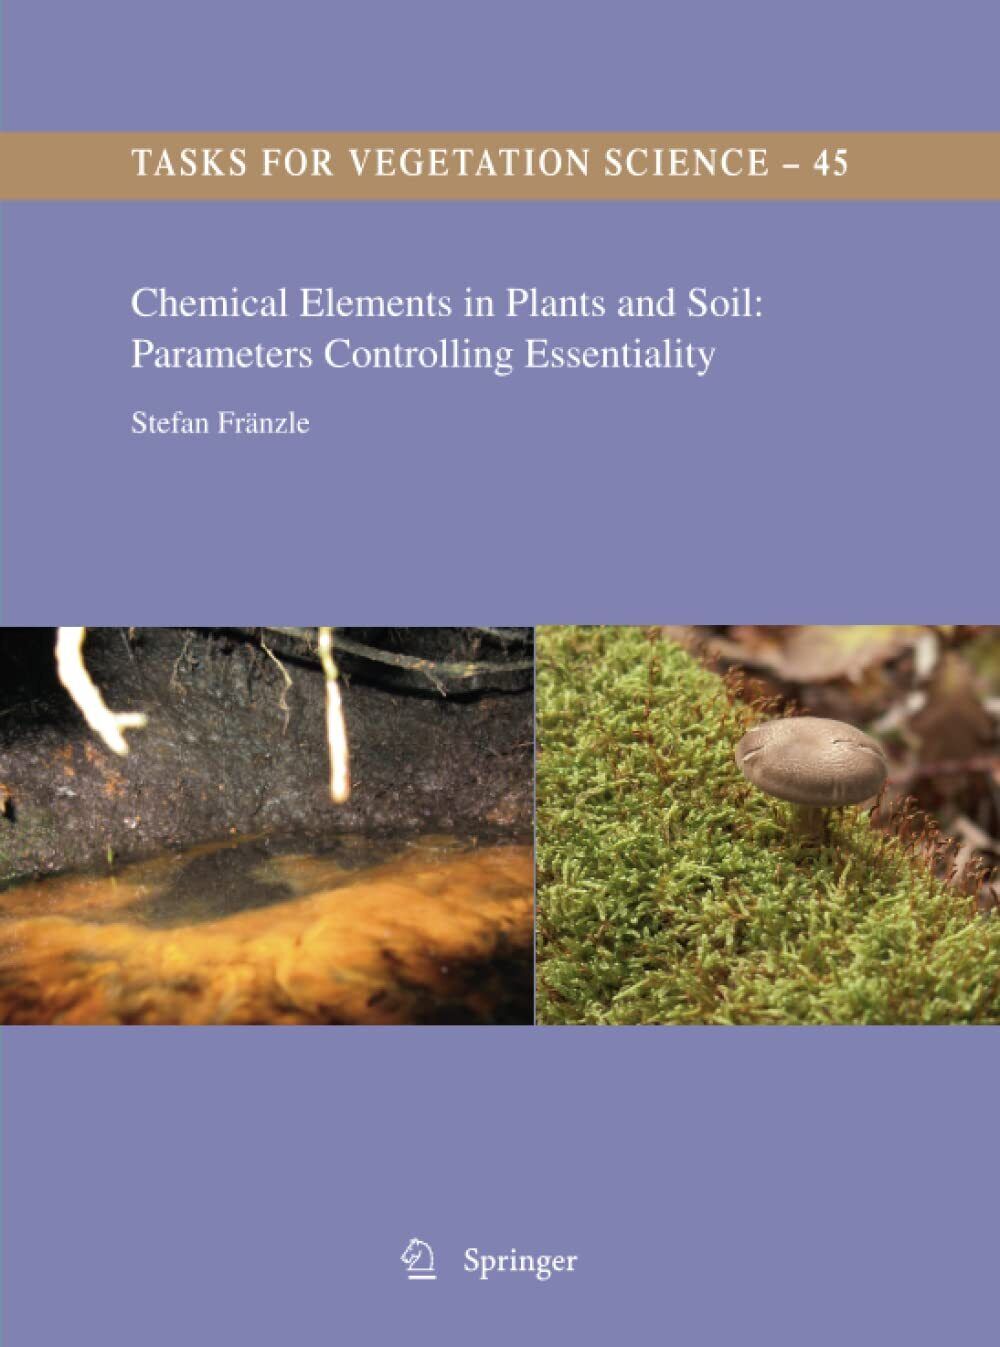 Chemical Elements in Plants and Soil - Stefan Fr?nzle - Springer, 2014